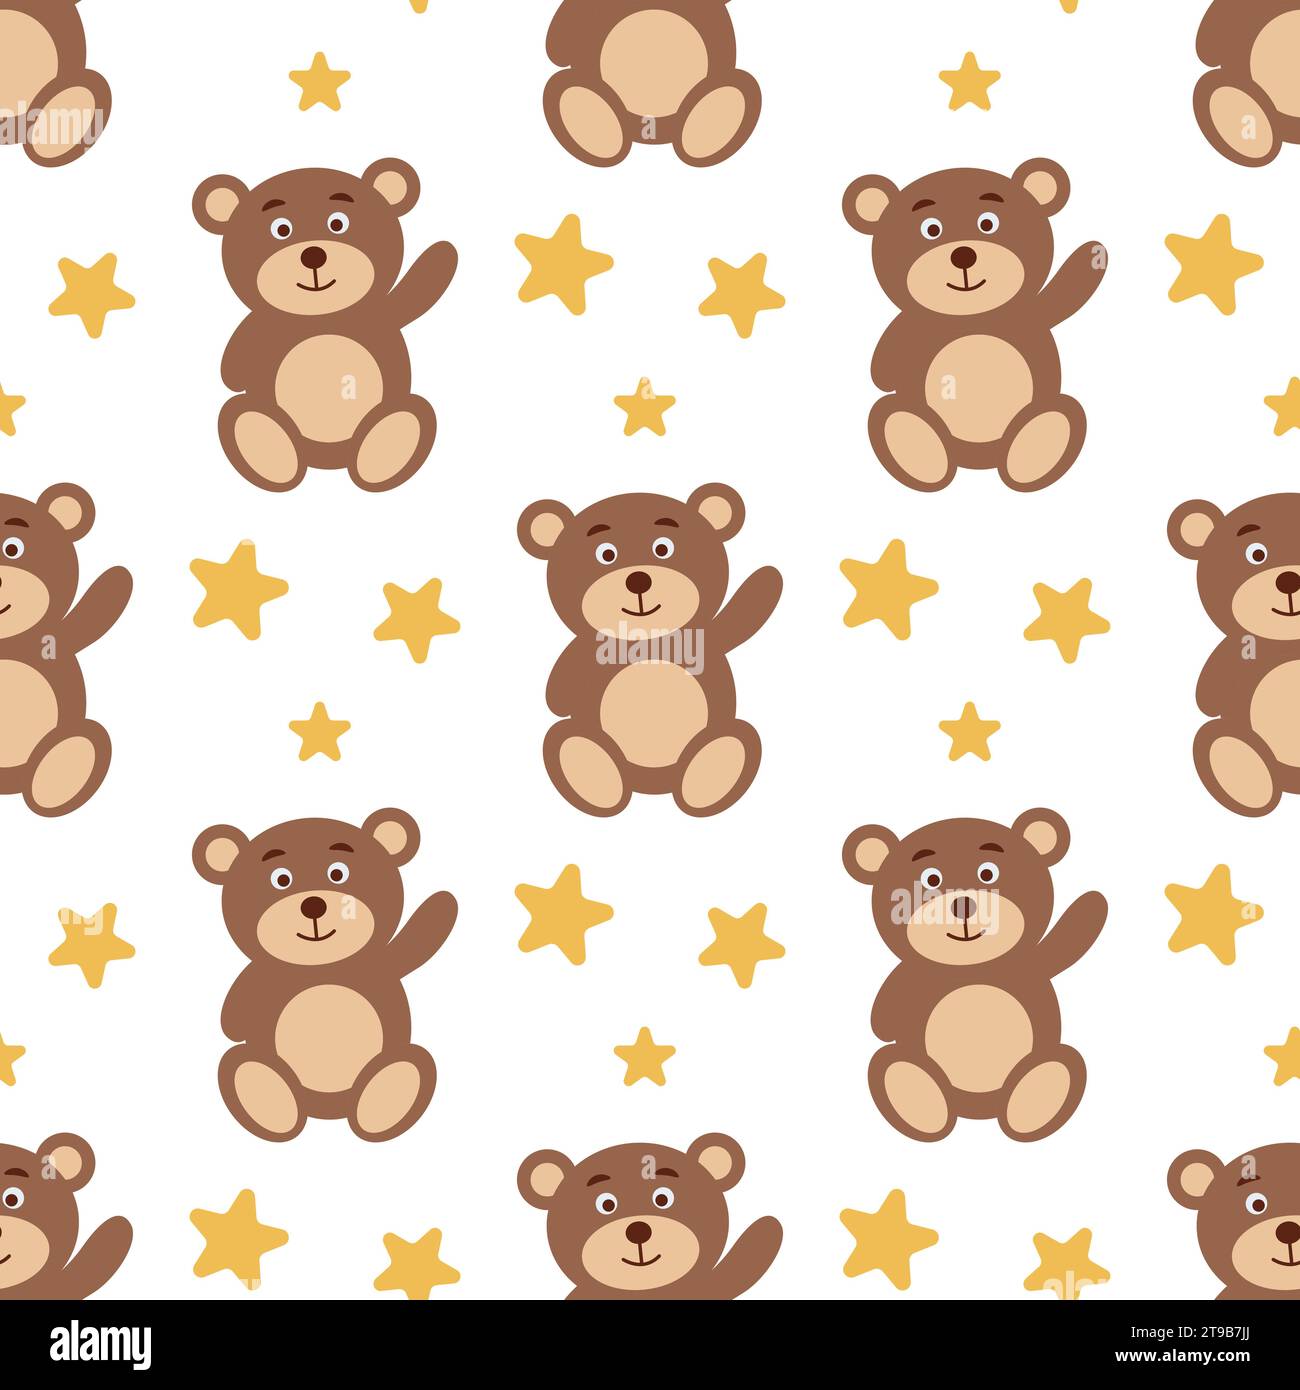 Teddybär winkt mit seinem nahtlosen Pfotenmuster. Niedlicher Hintergrund mit Spielzeugbären und Sternen. Babydruck für Textilien, Kleidung, Stoff, Tapeten, Verpackungen Stock Vektor